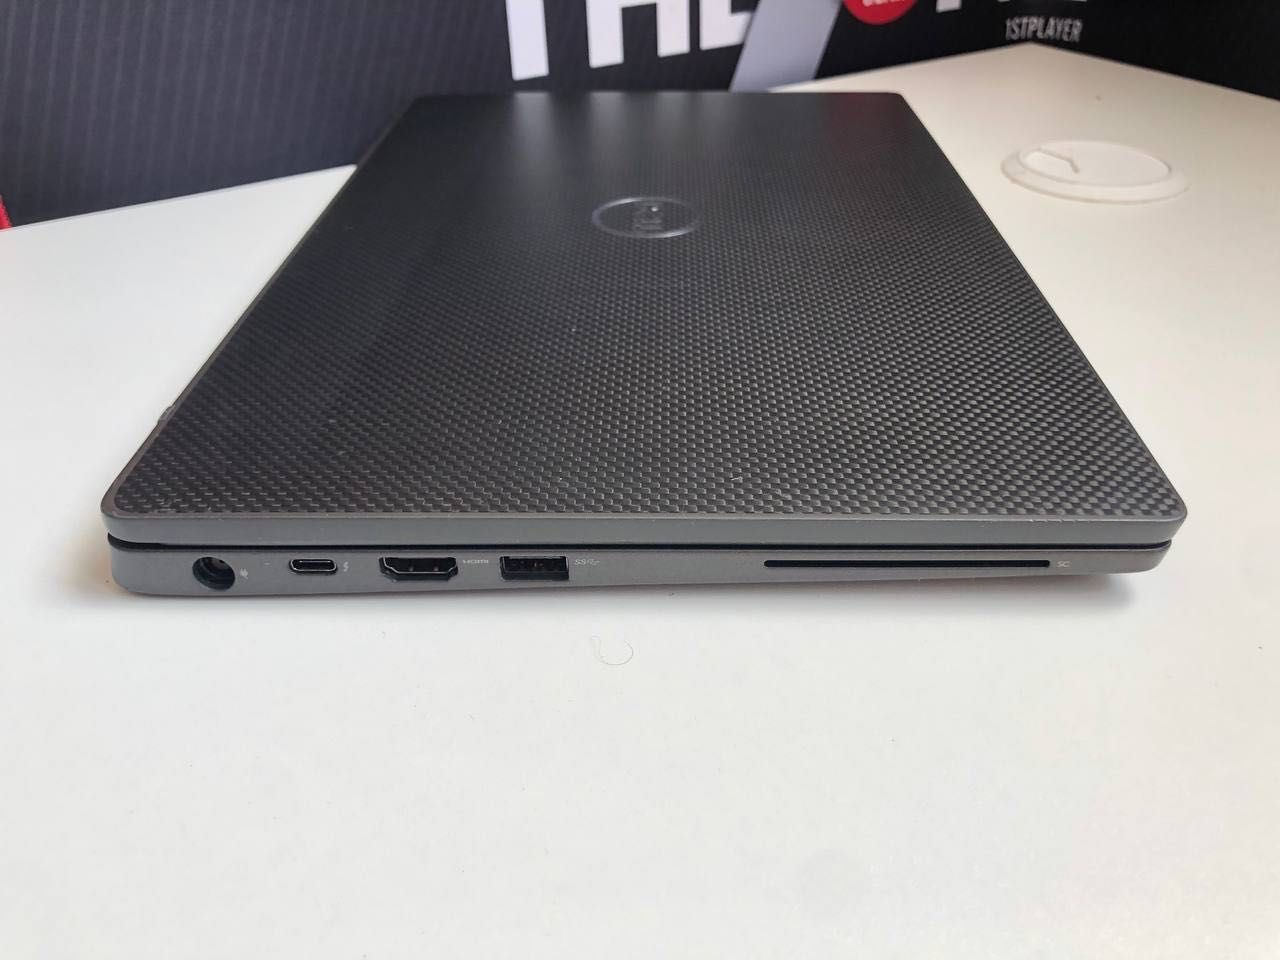 Премиум ноутбук Dell e7400 8 ядер FullHD IPS